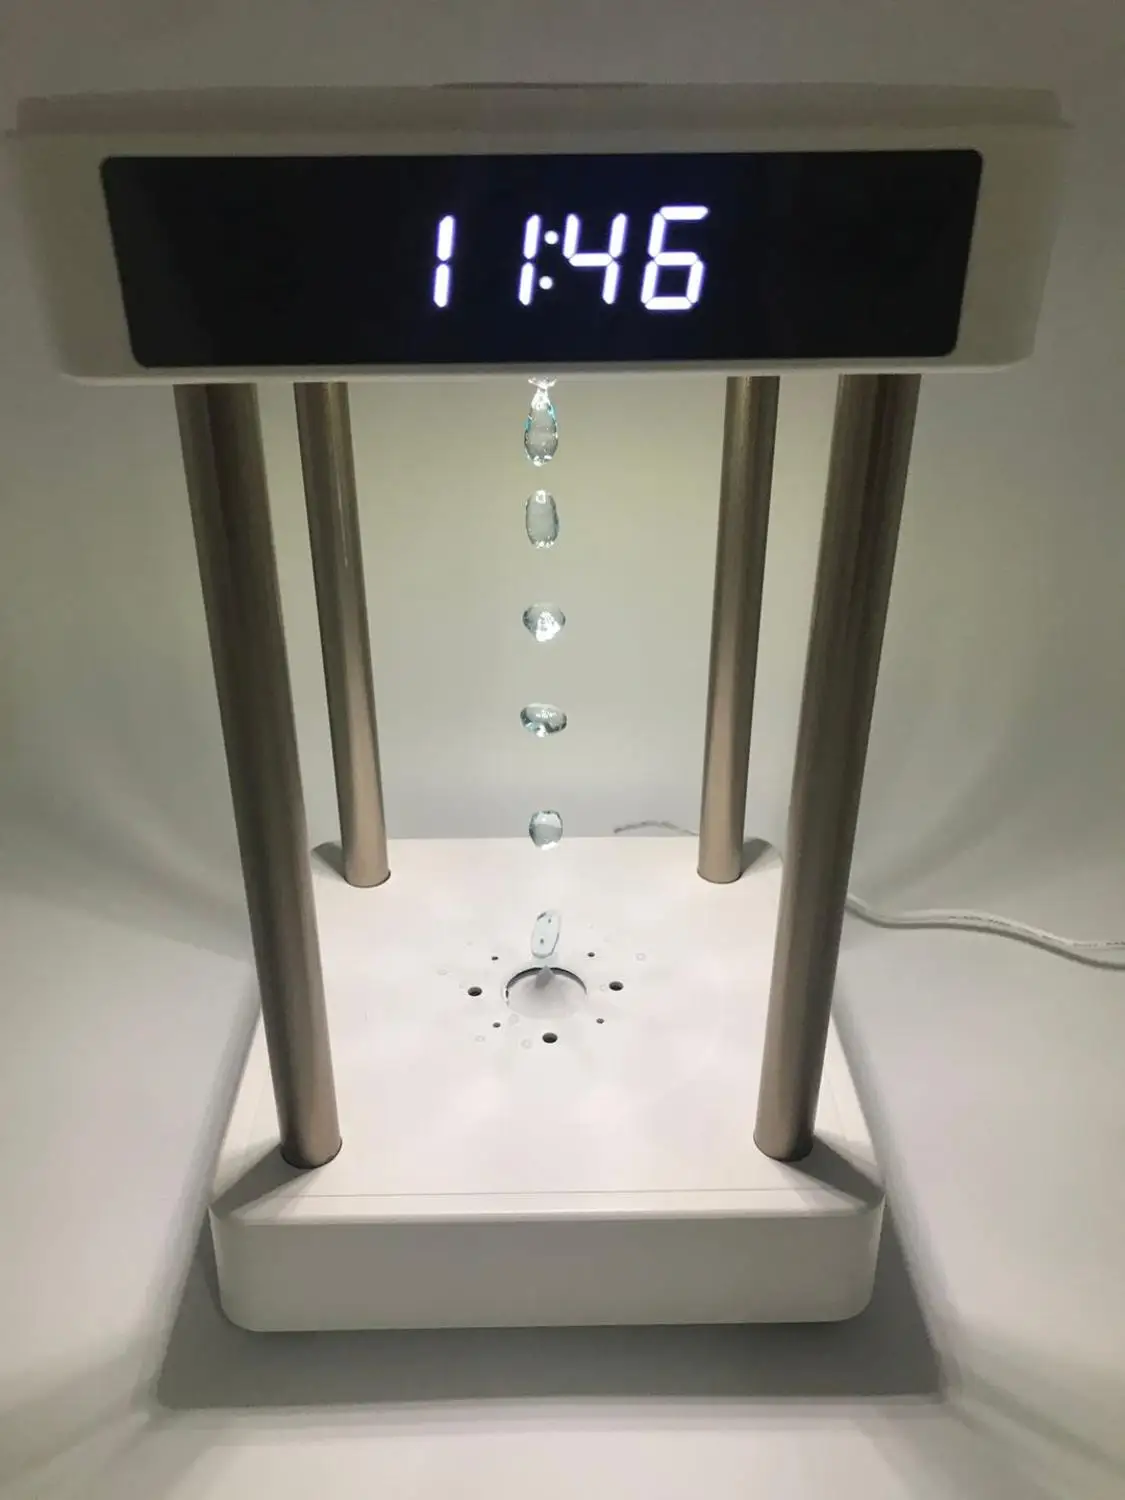 Anti-gravitacije čas peščena ura kaplja vode backflow negativnih ionov zraka čistilec poleg formaldehida z vzdušje lučka